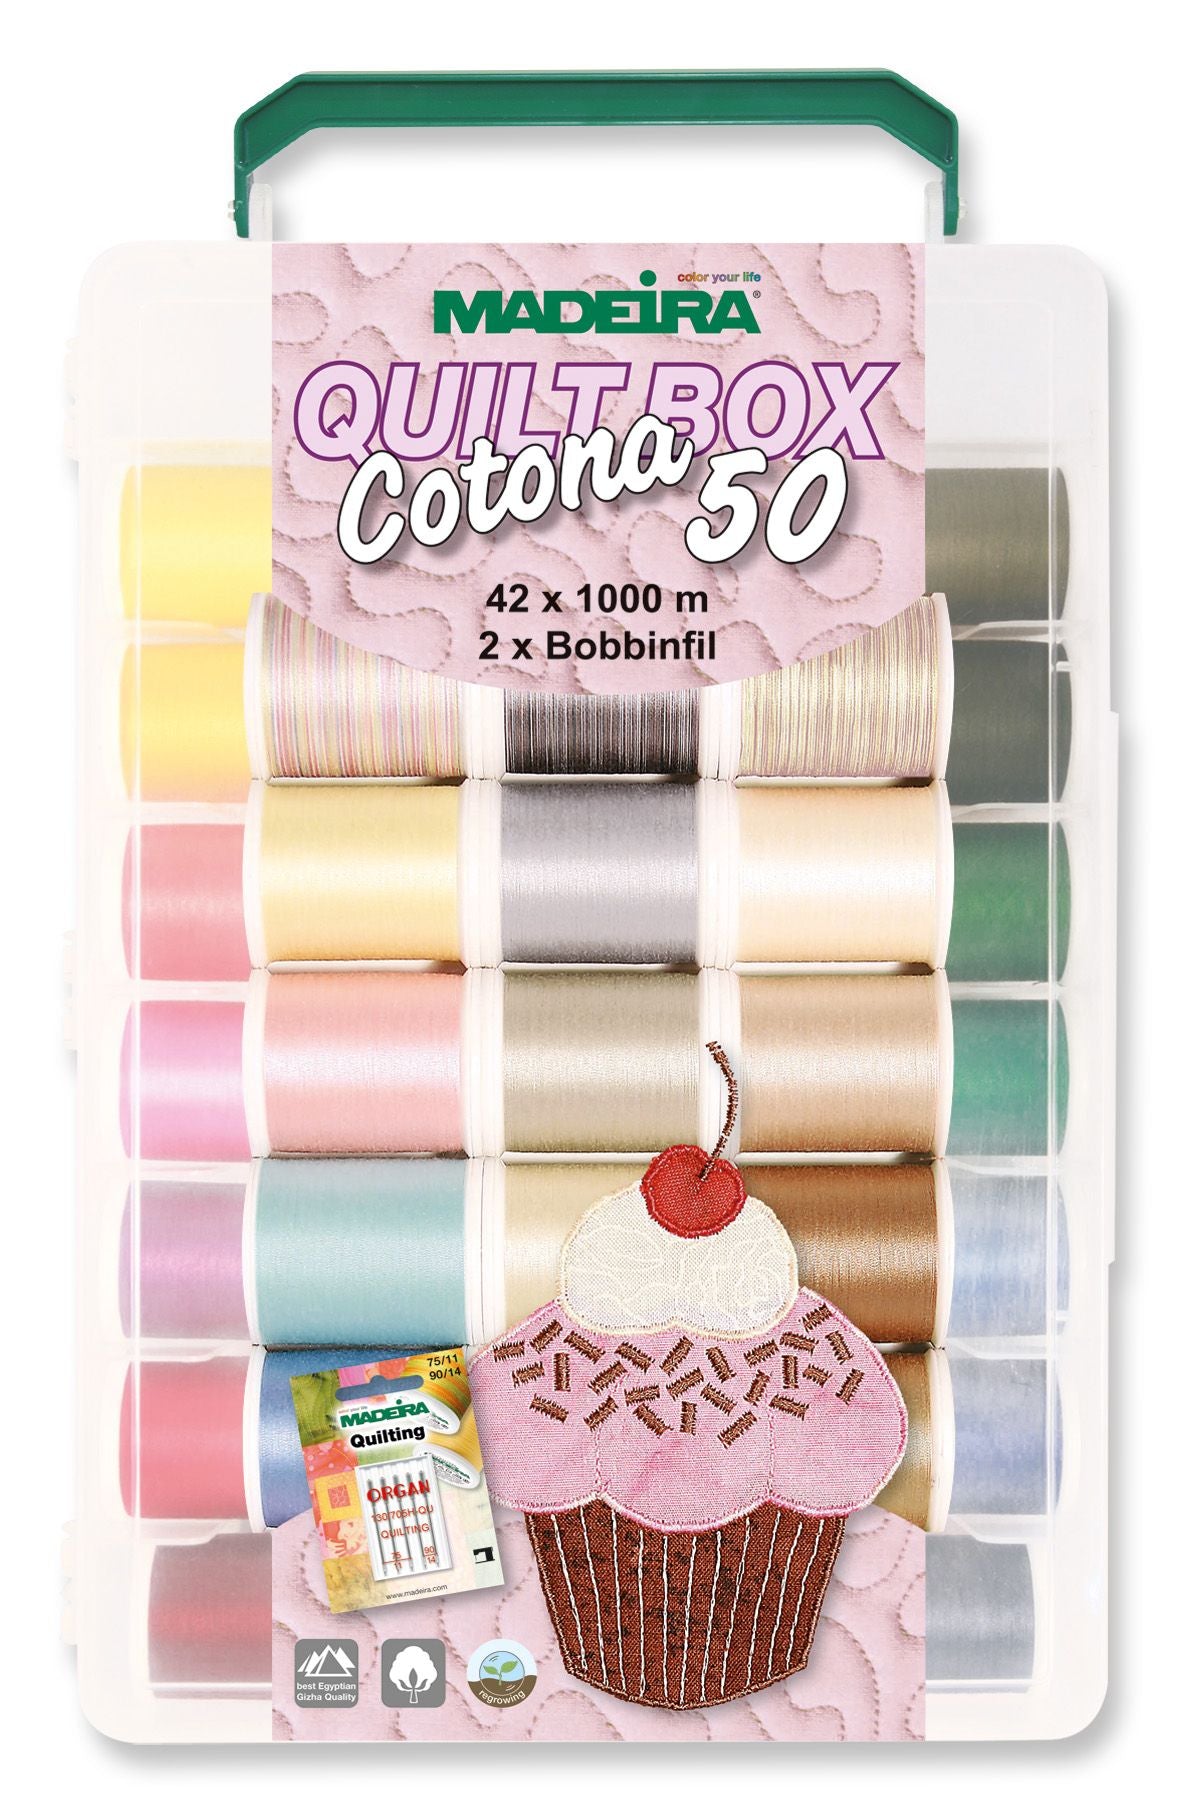 softbox-cotona-50-42-colors-8053